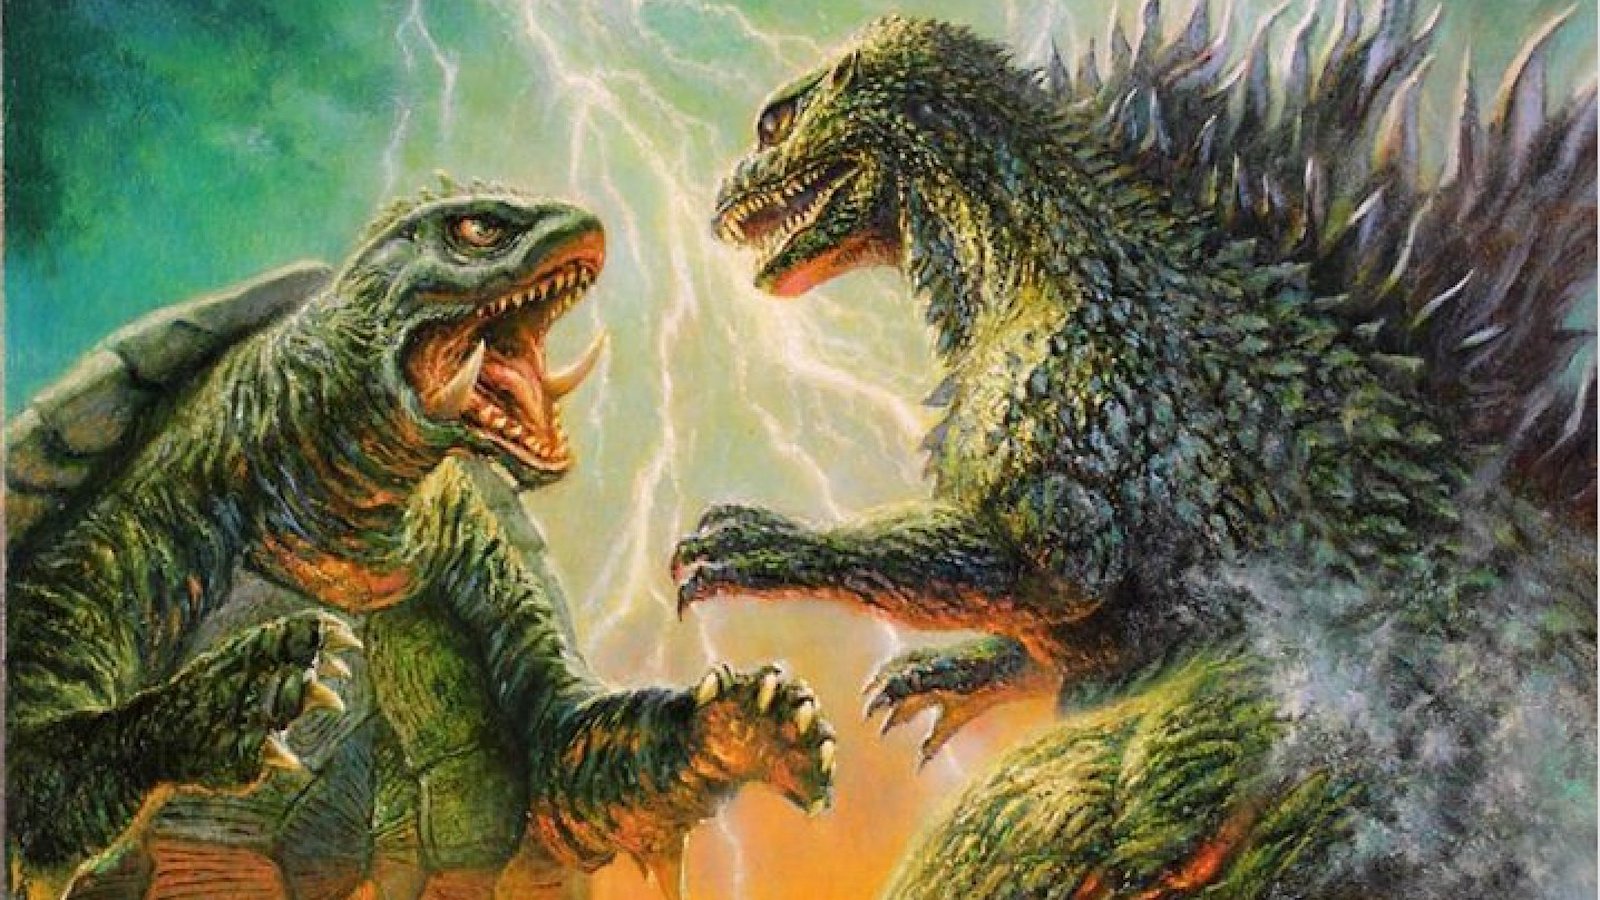 Nascita e caduta di Gamera: le origini del rivale di Godzilla